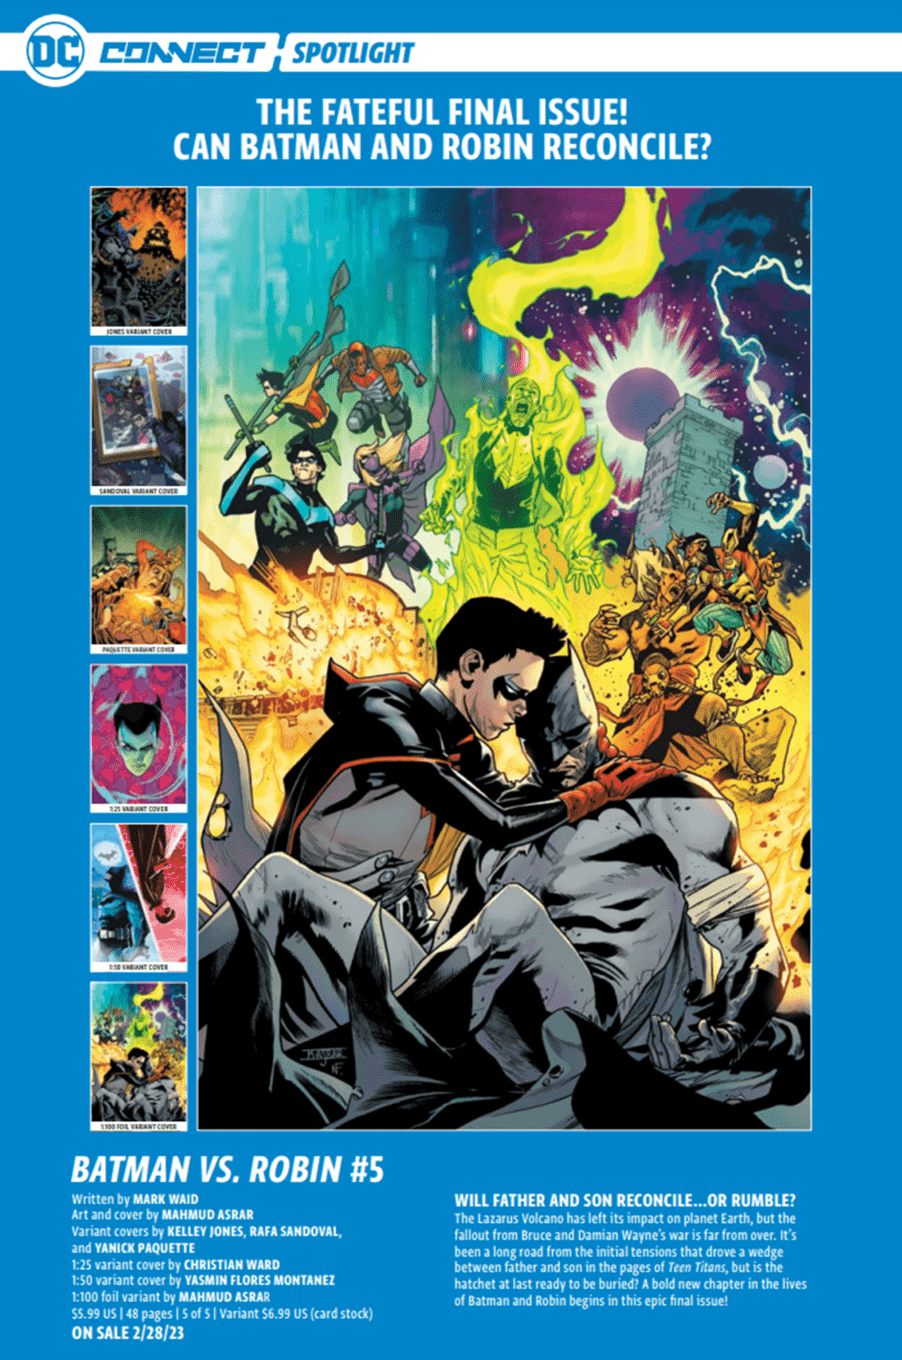 Batman vs Robin #5 DC Connect giới thiệu và cover